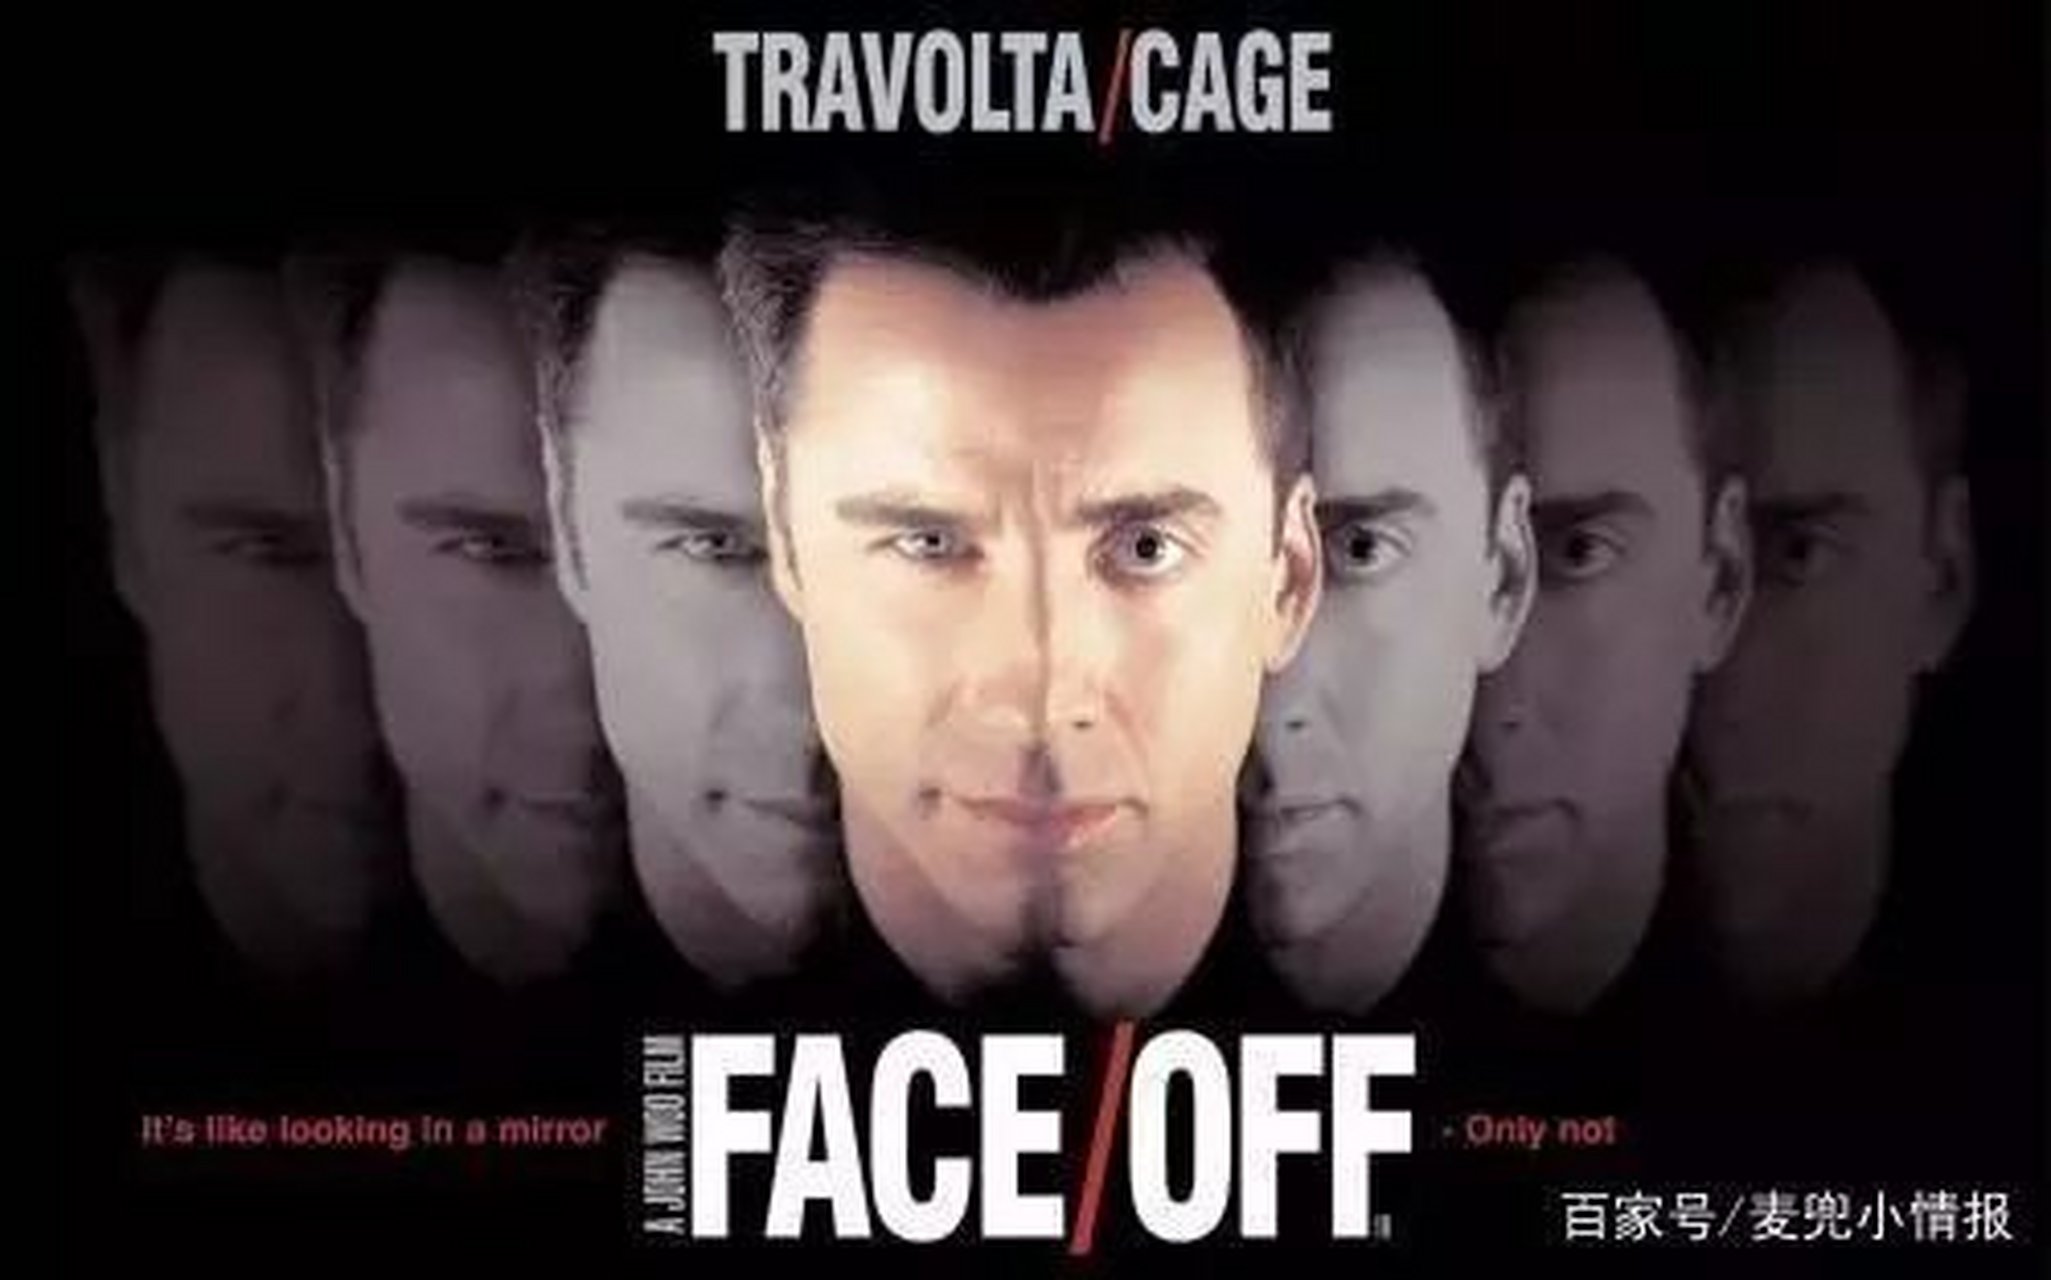 高分电影推荐《变脸》是一部1998年动作片,主演们演技炸裂,电影